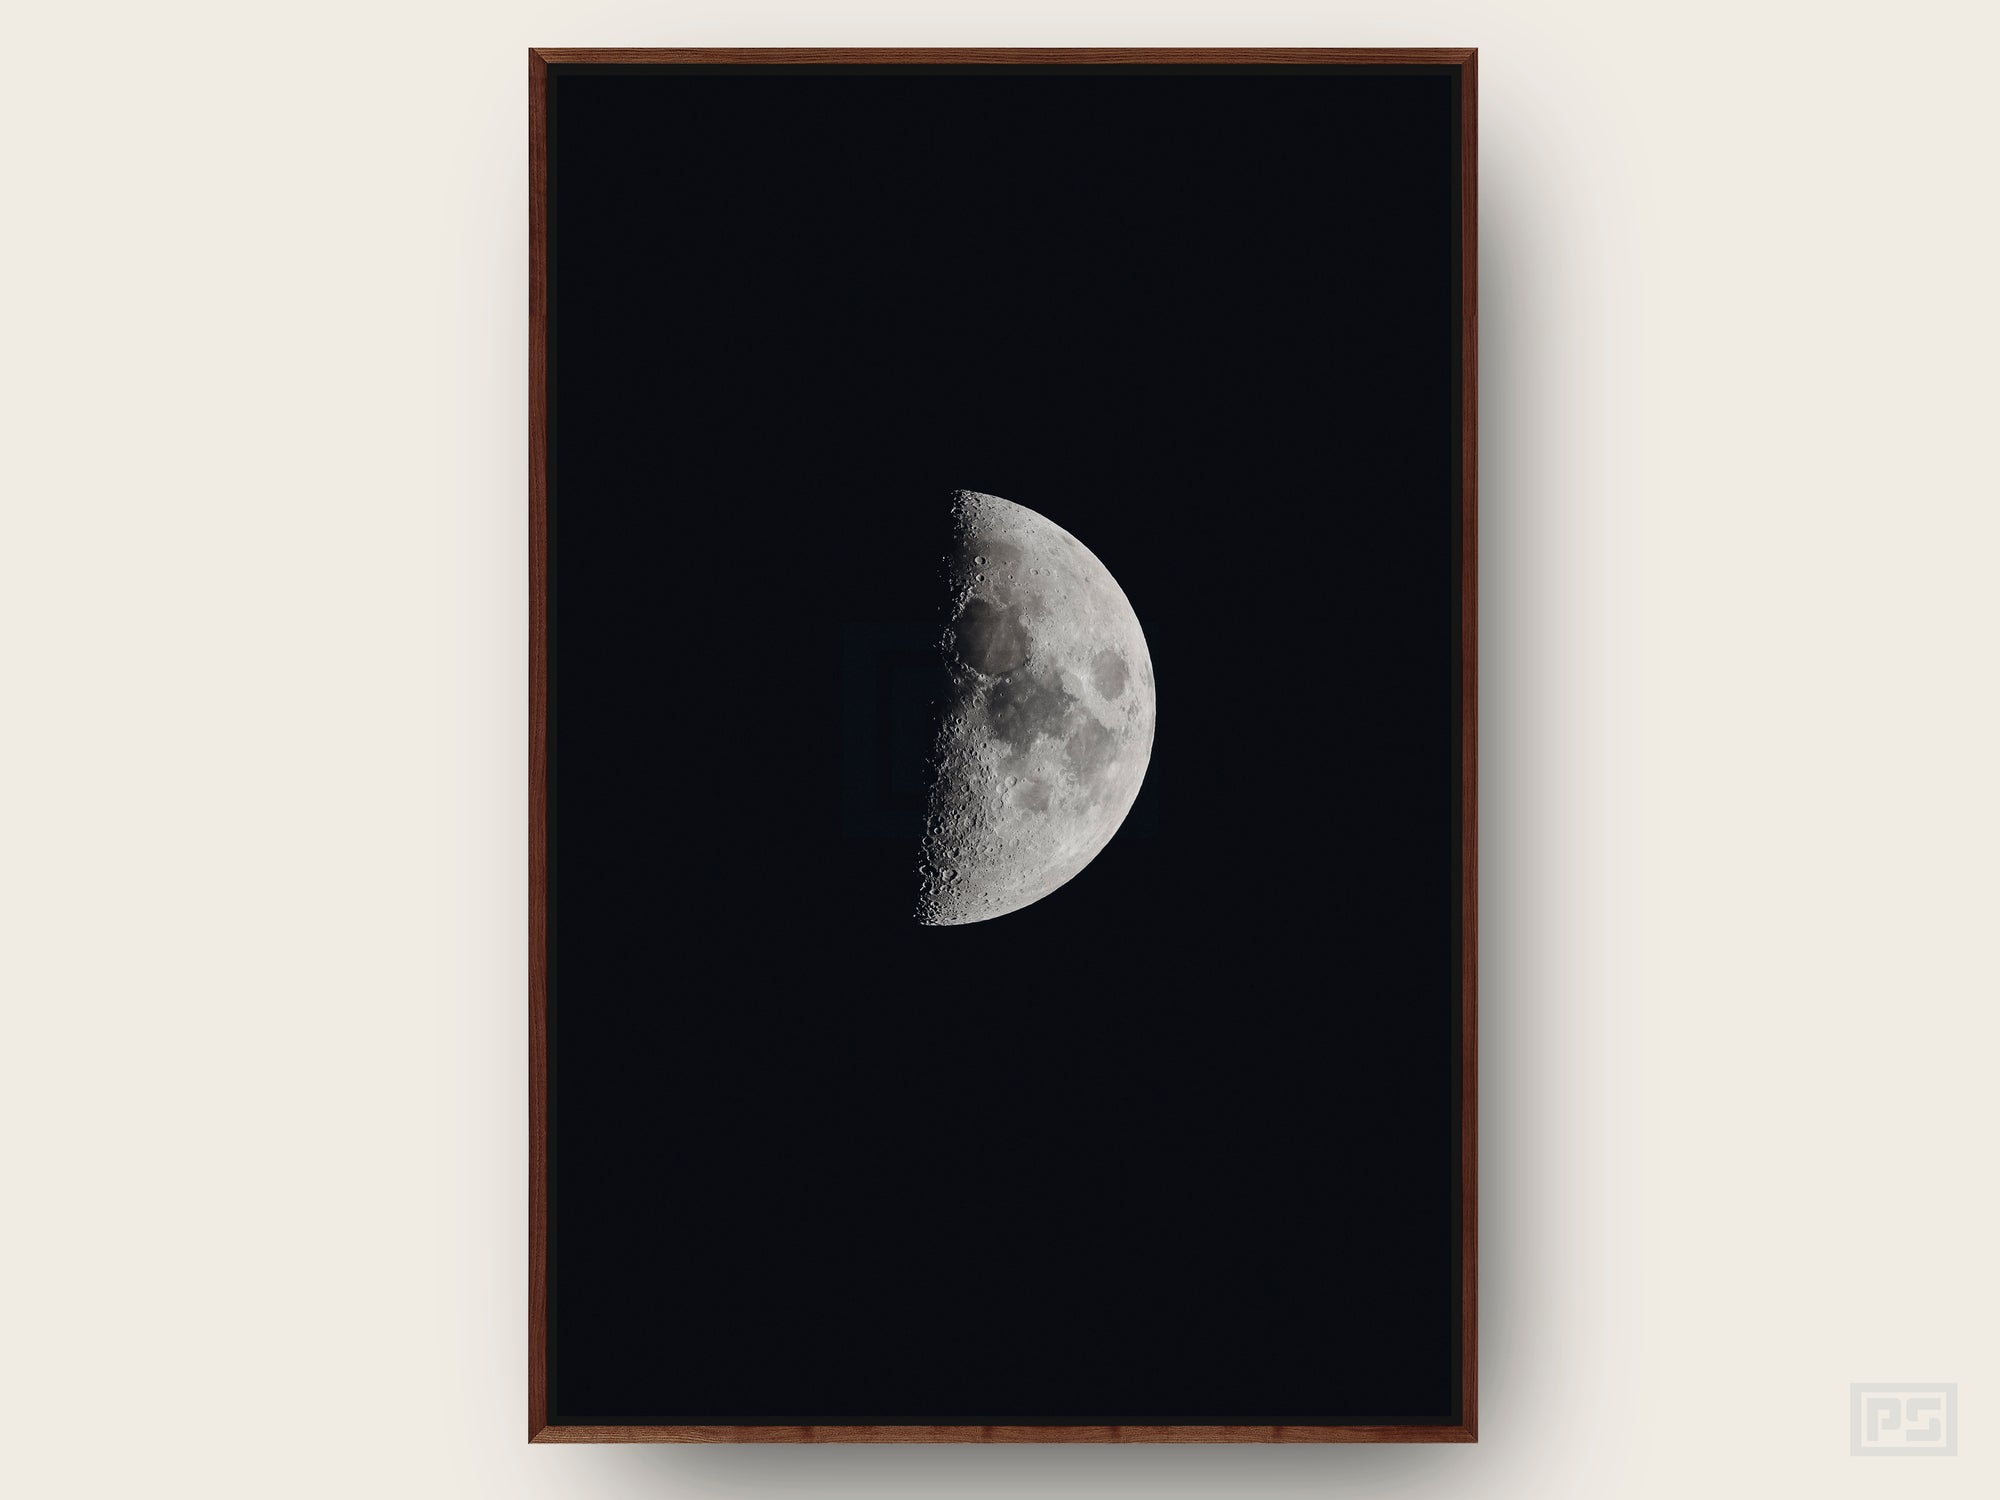 Framed Canvas Print "The Half Moon"